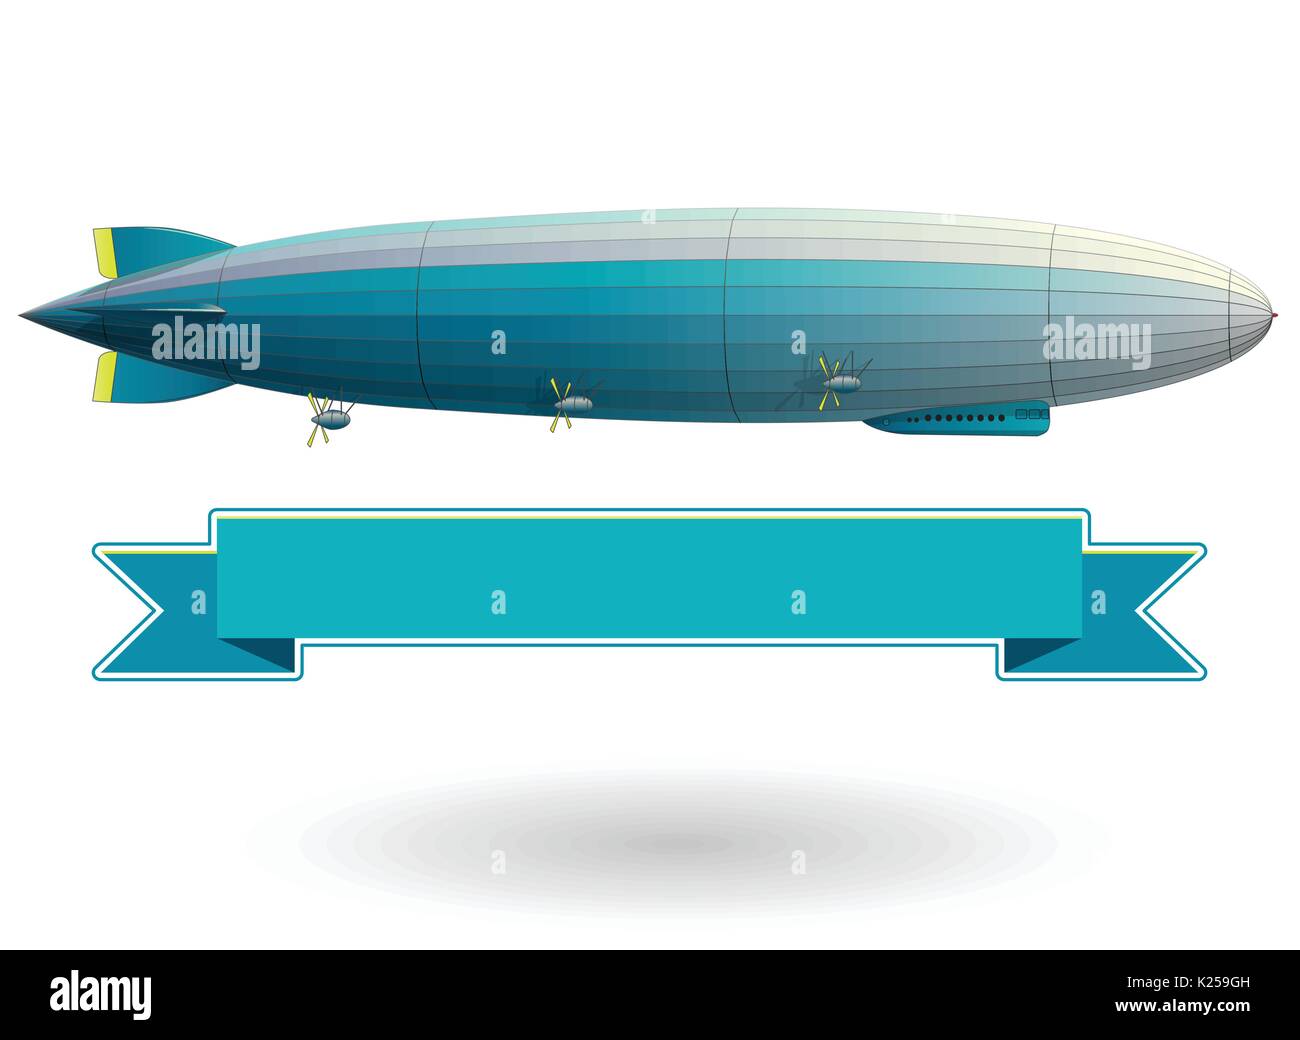 Legendären riesigen Zeppelin Luftschiff gefüllt mit Wasserstoff. Blau stilisierte fliegen Ballon. Big lenkbar, Propeller und Ruder. Lange vektor Zeppelin. Stock Vektor